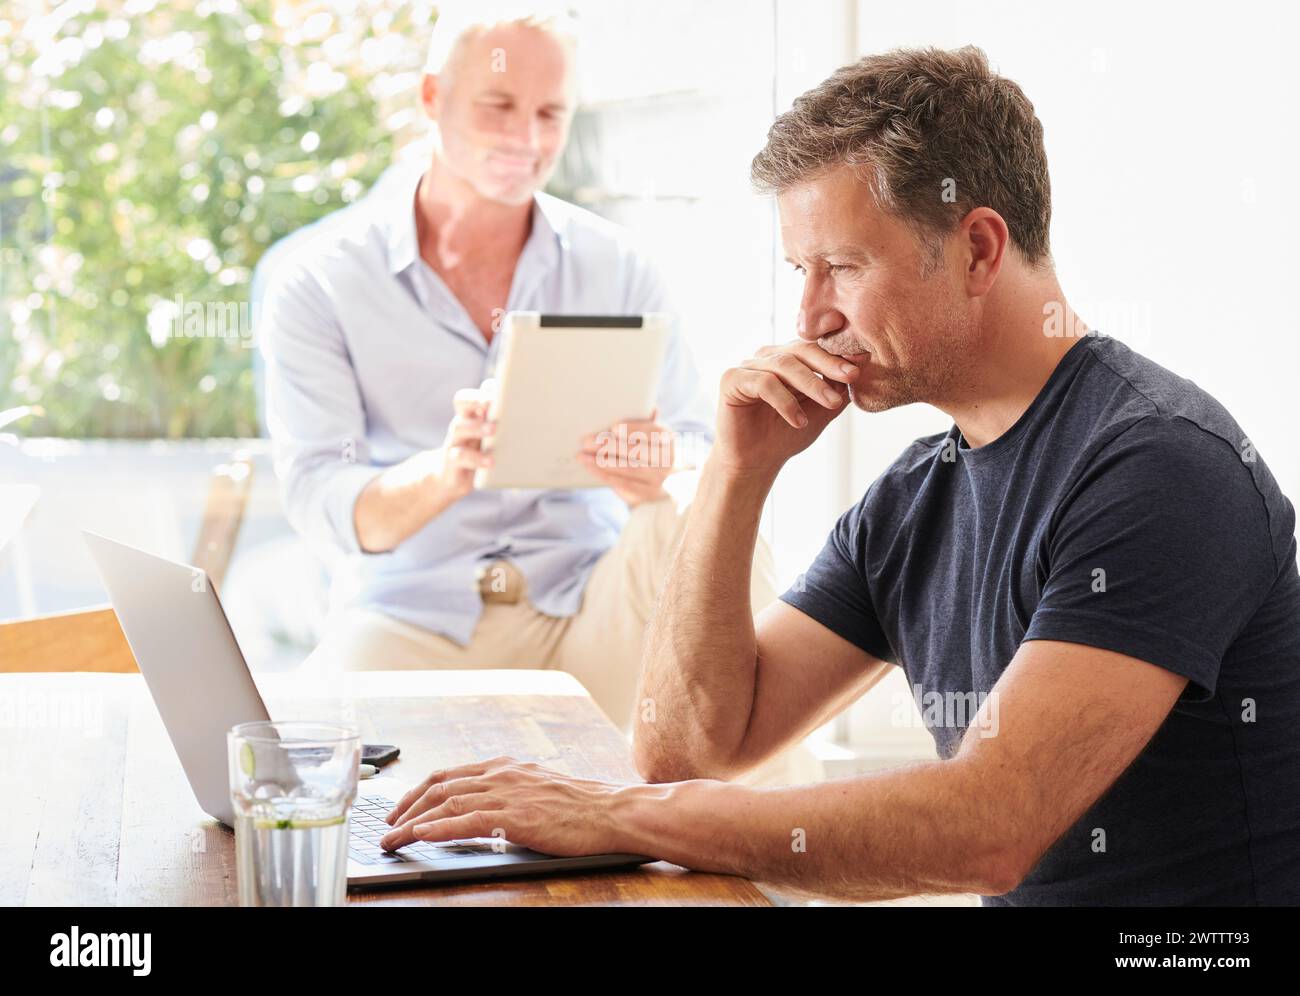 Zwei Männer, die an einem Tisch mit Laptop und Tablet arbeiten. Stockfoto